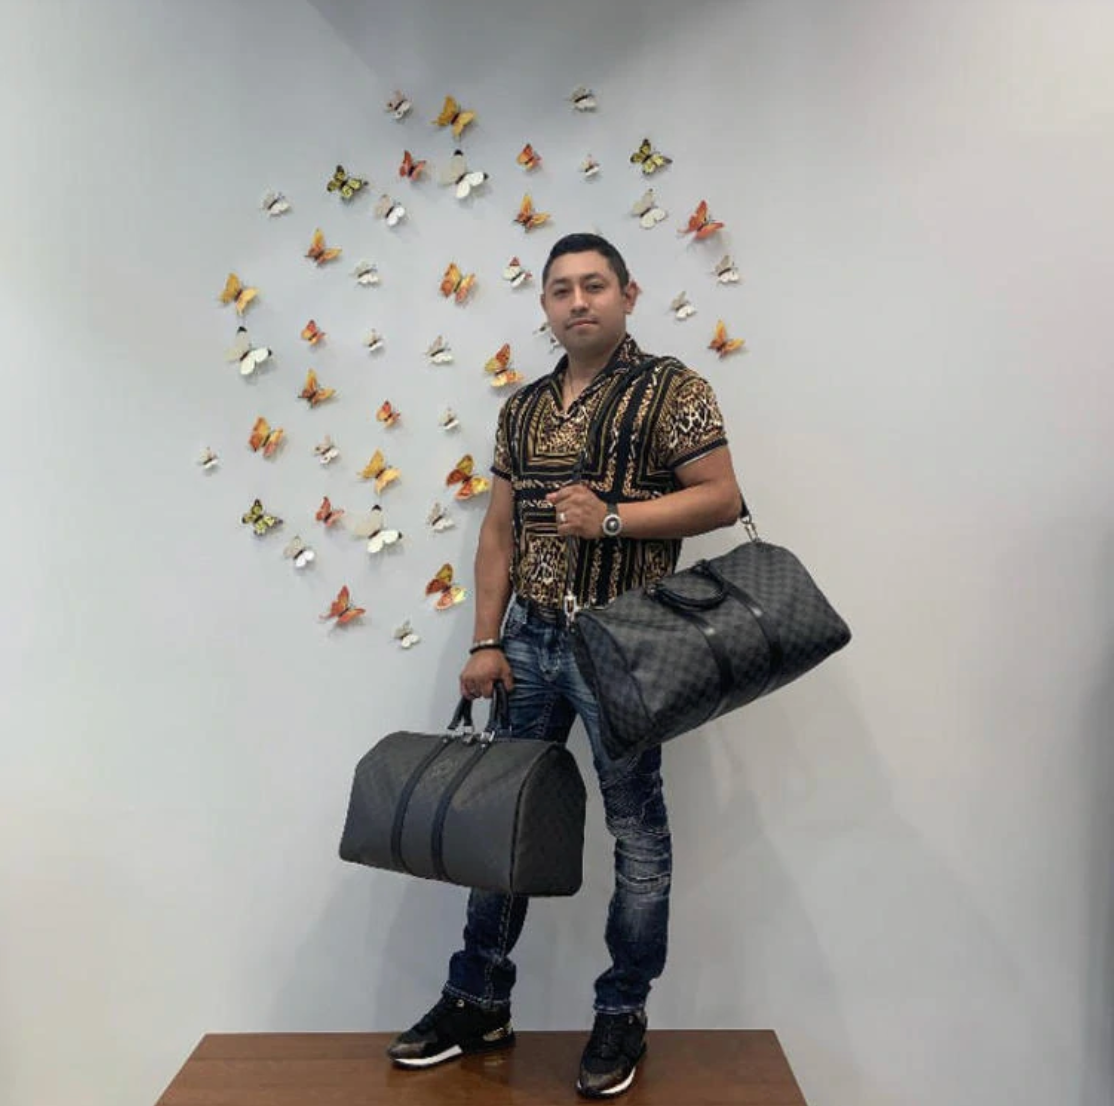 Artois MM Tote – Keeks Designer Handbags